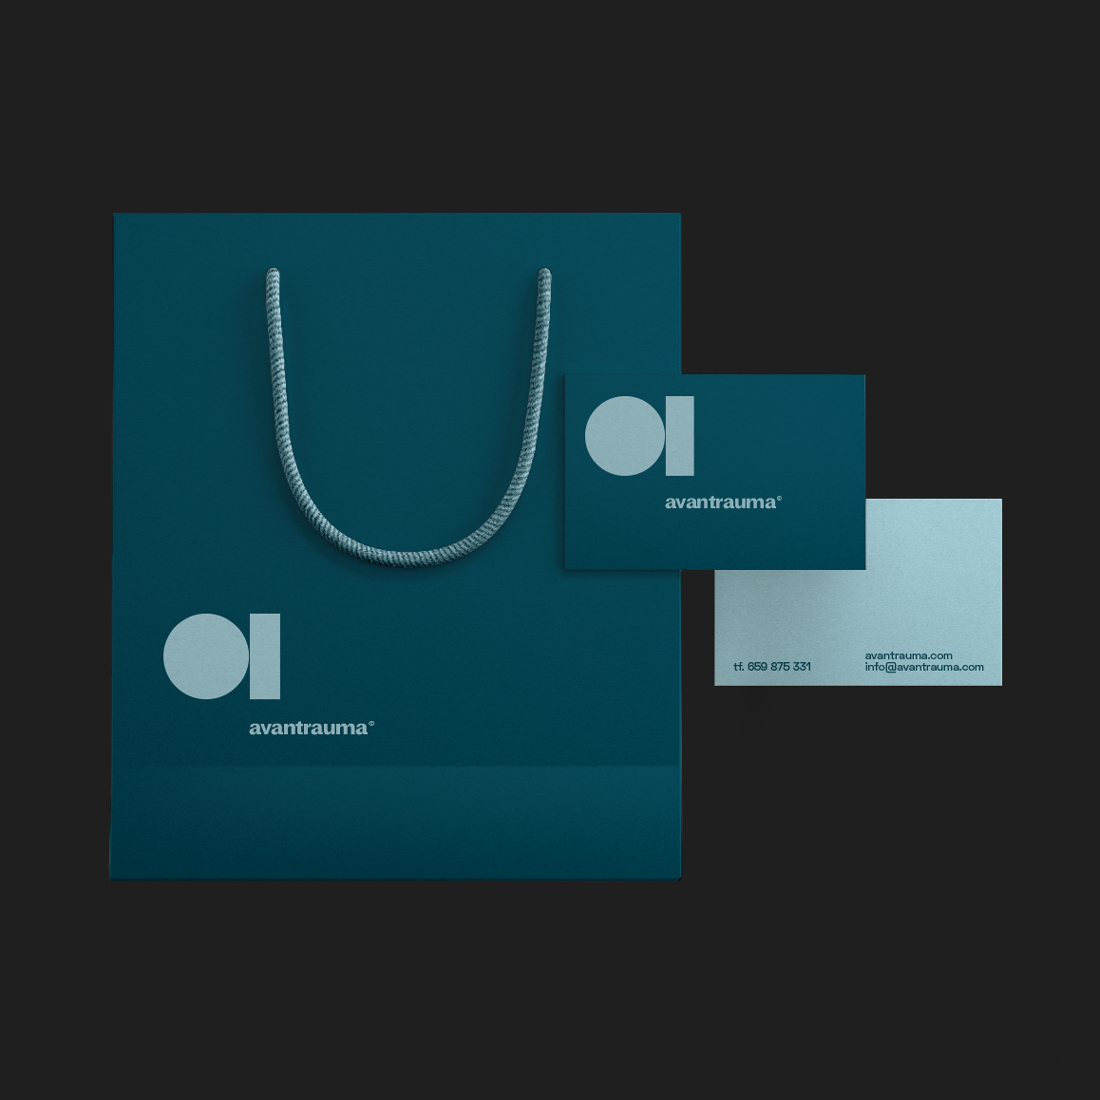 Diseño y desarrollo de identidad visual corporativa para Avantrauma. Bolsa de papel.